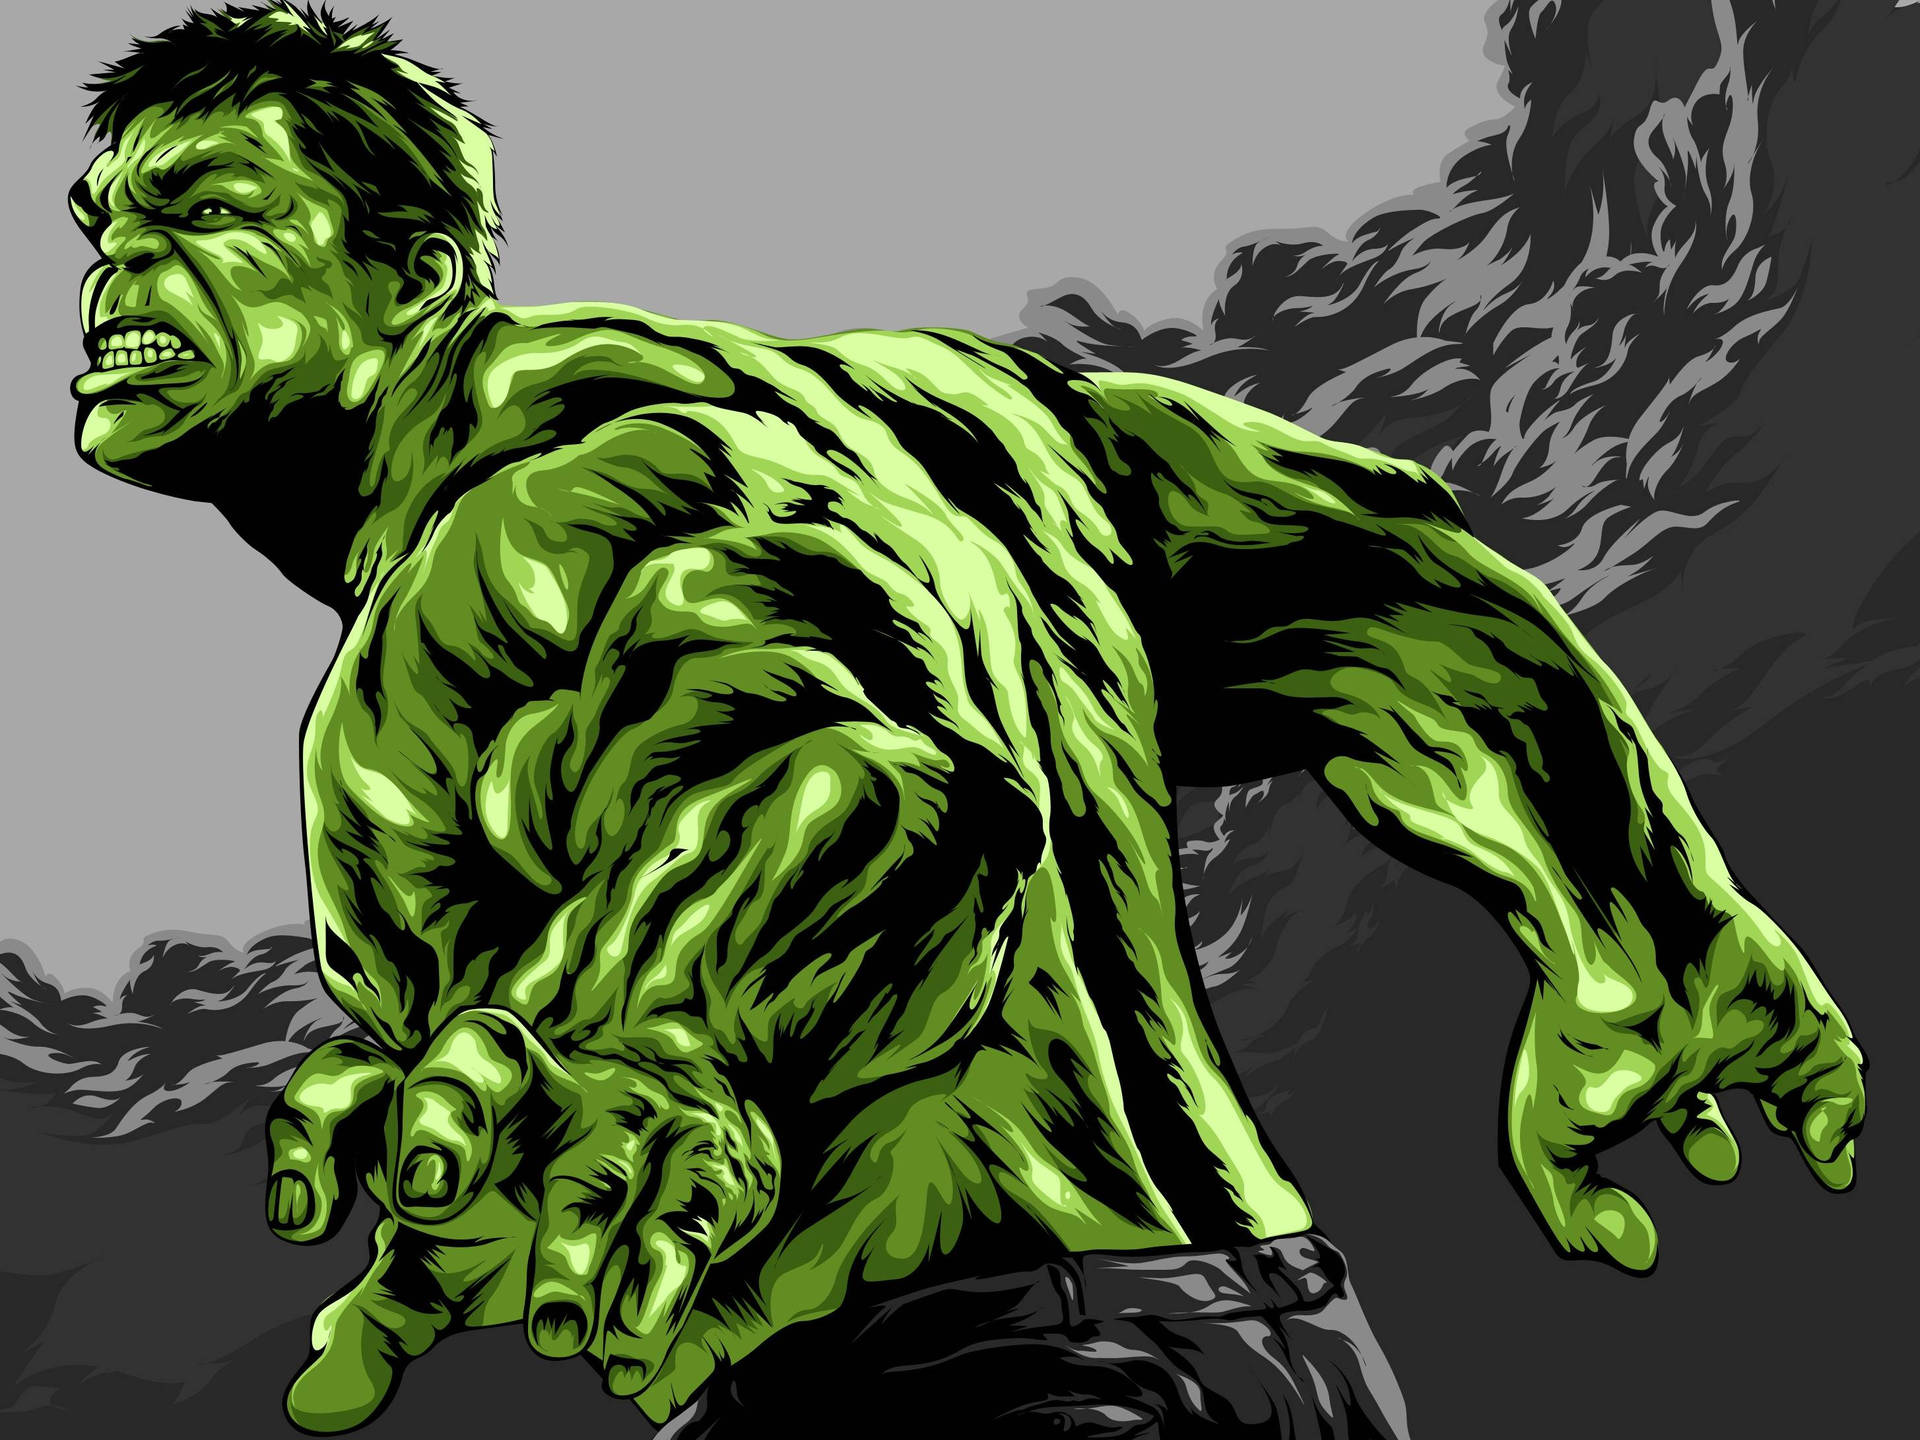 Hulk Art On Black Background Wallpaper